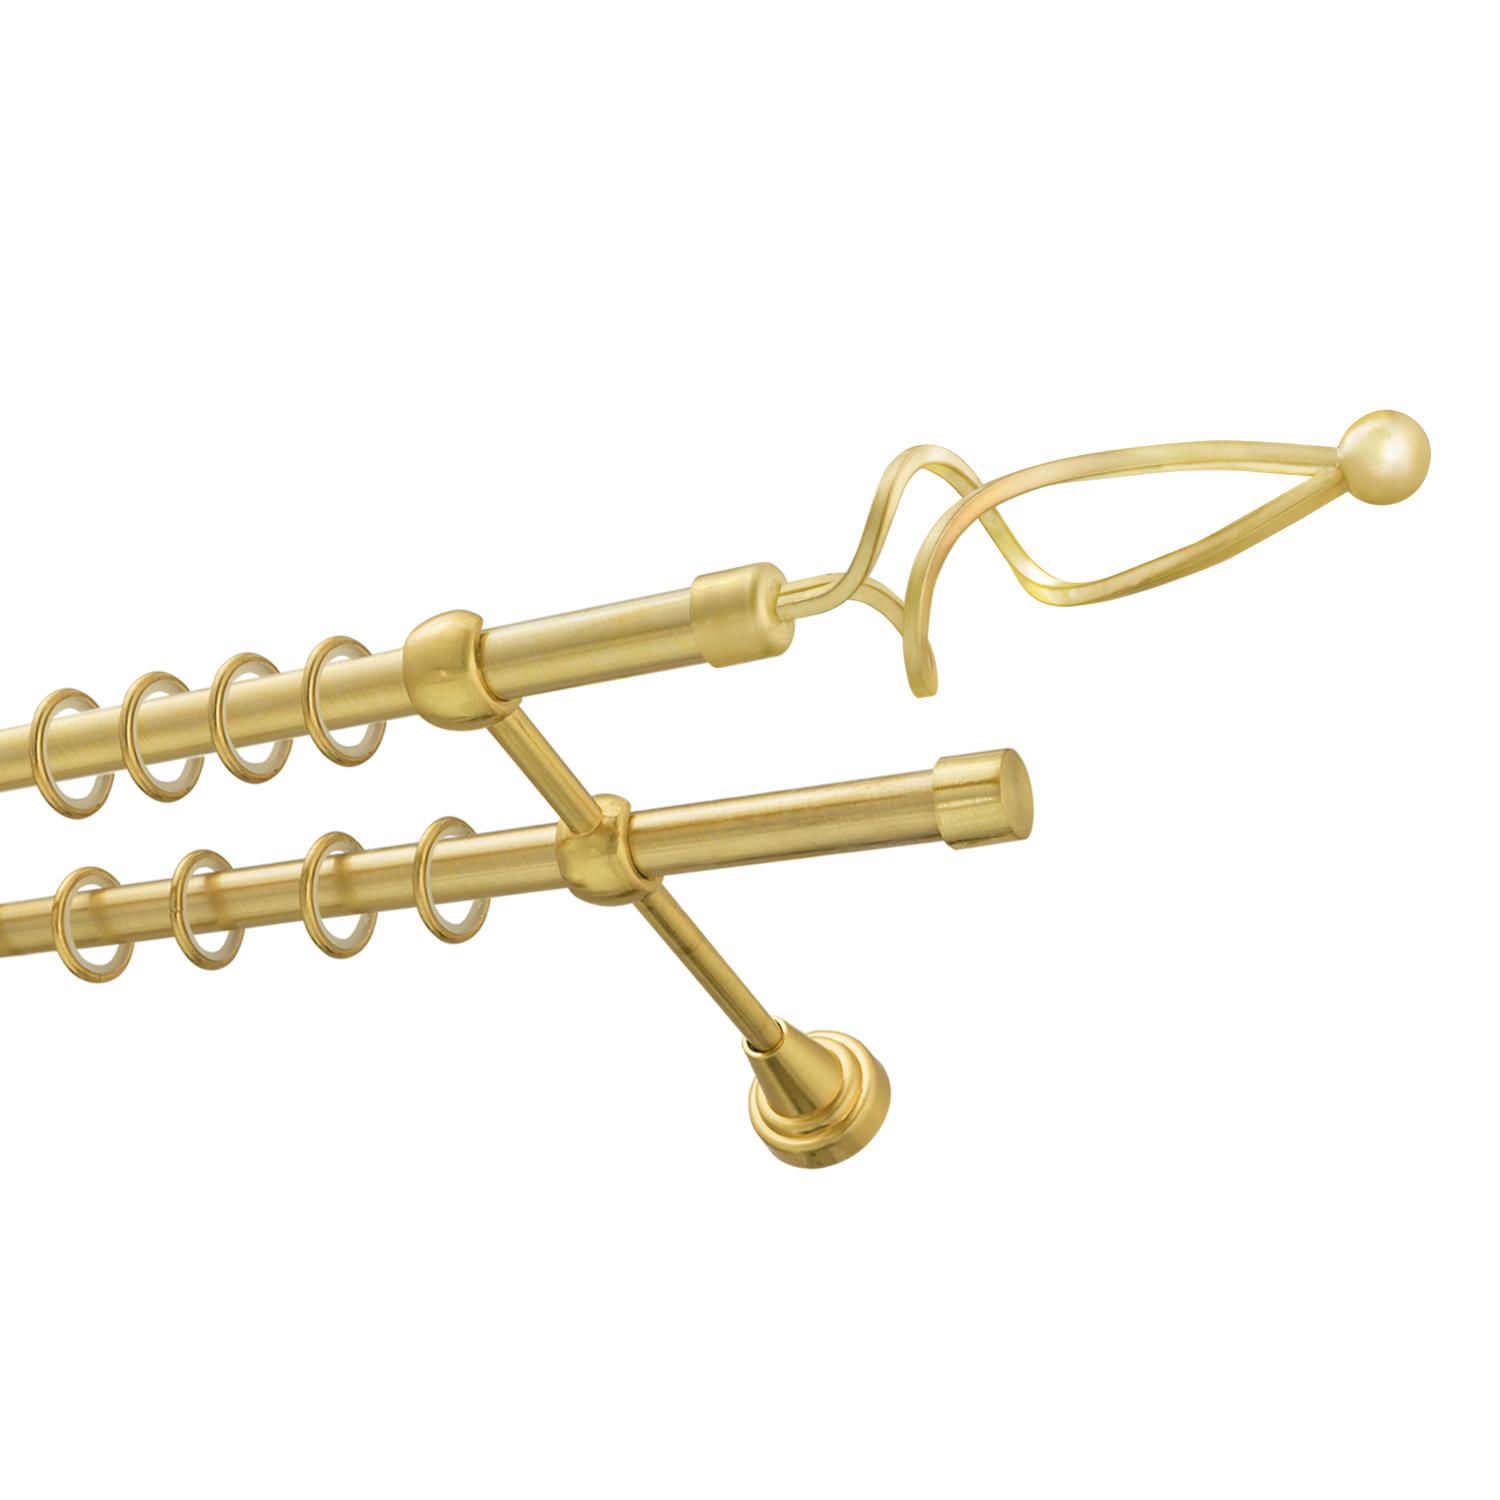 Металлический карниз для штор Жемчужина, двухрядный 16/16 мм, золото, гладкая штанга, длина 200 см - фото Wikidecor.ru